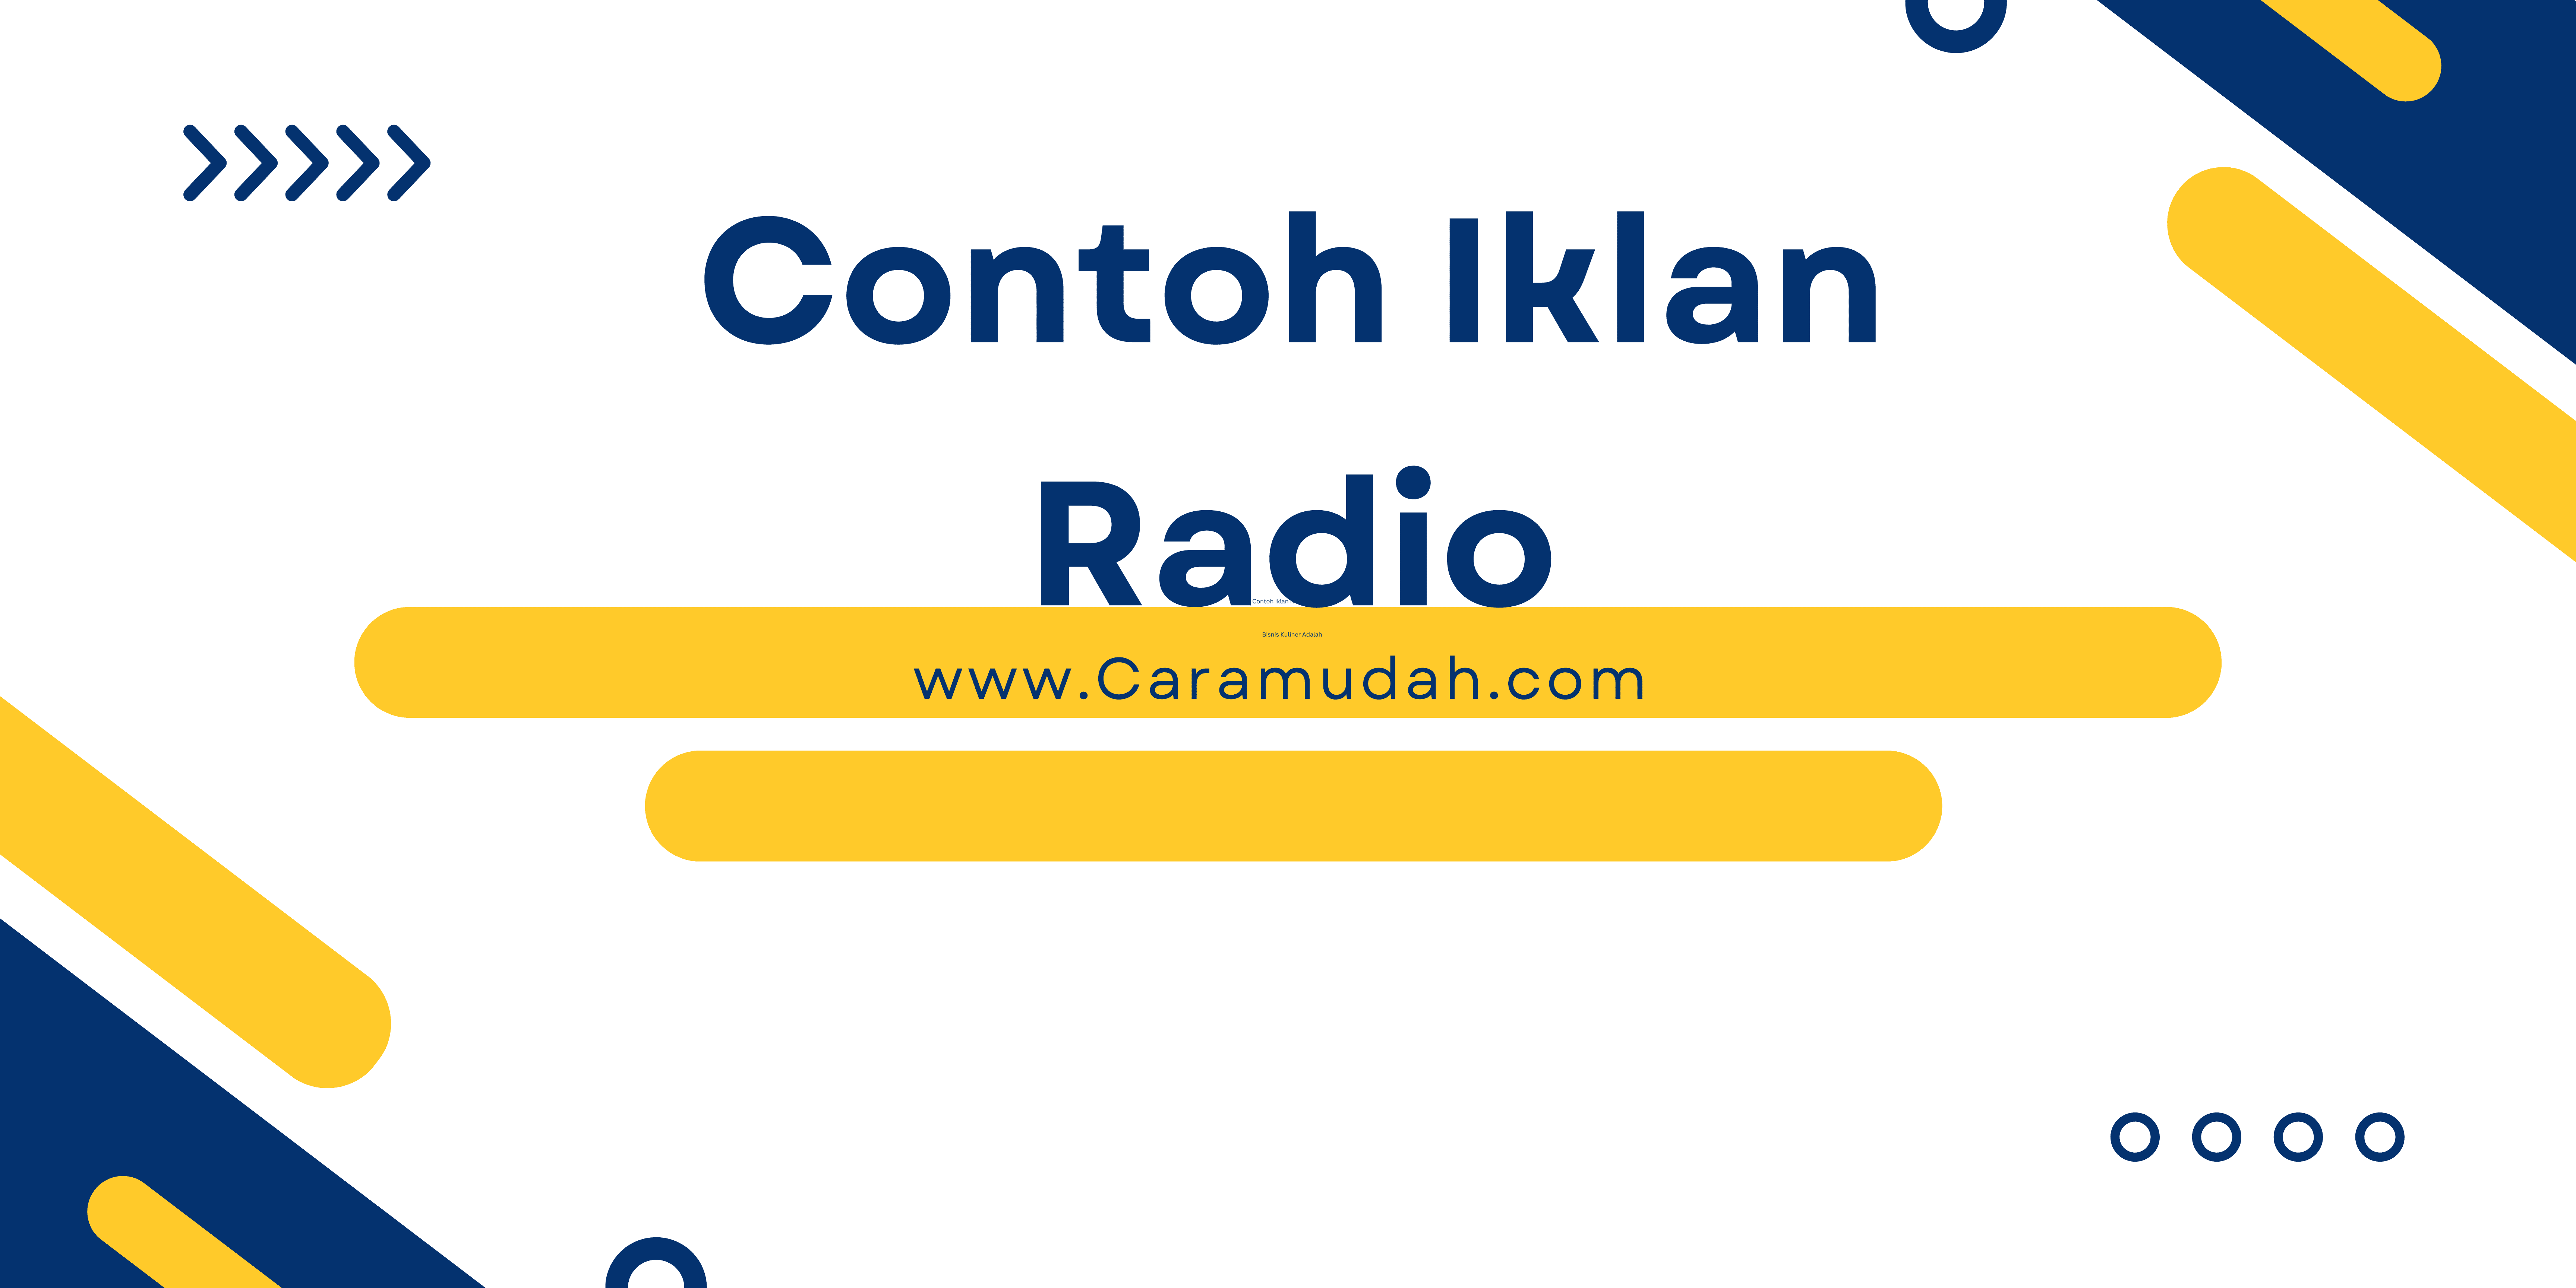 Contoh Iklan Radio